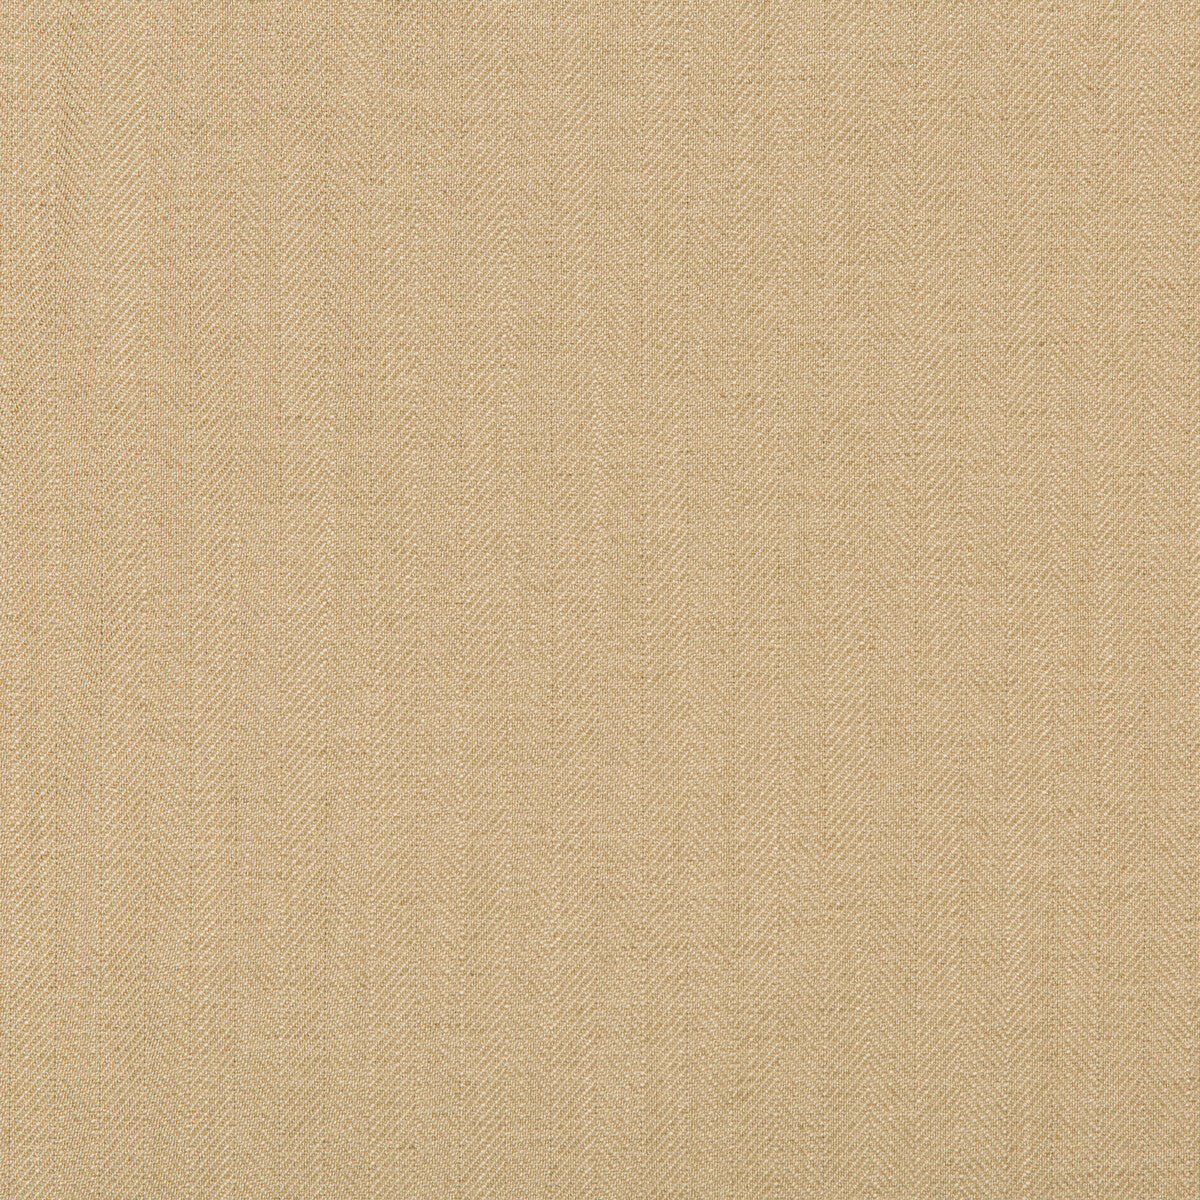 Kravet Basics fabric in 35782-16 color - pattern 35782.16.0 - by Kravet Basics